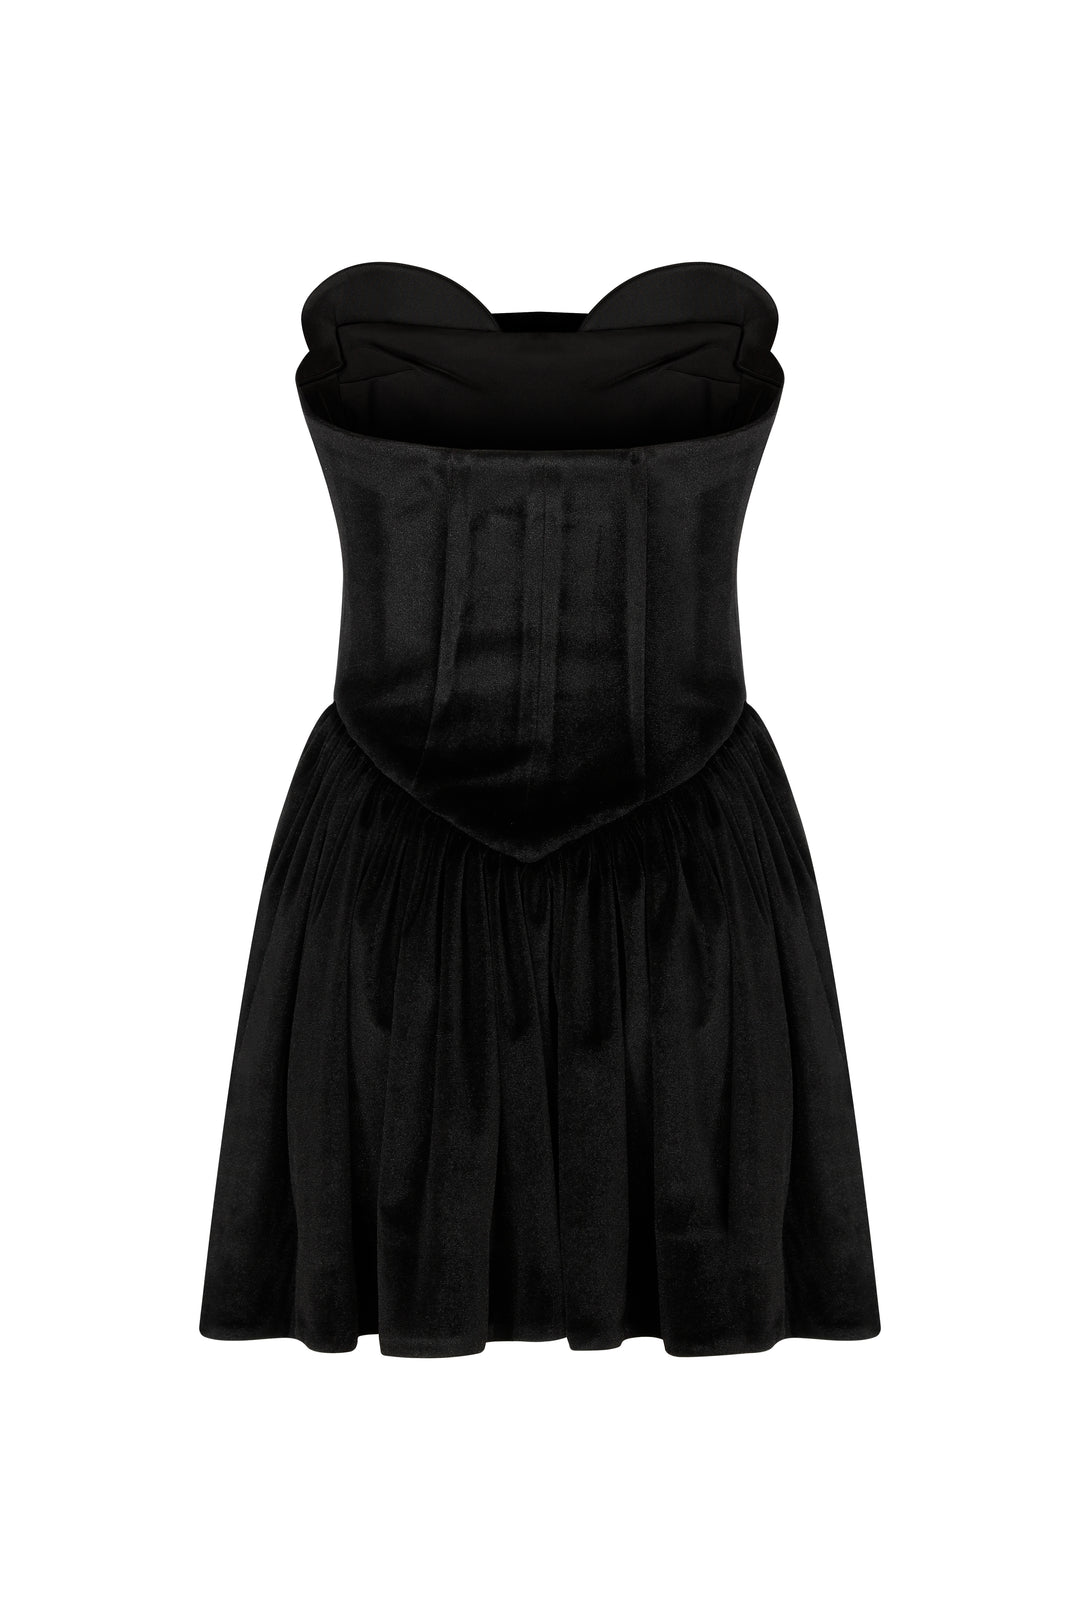 LEYLA - BLACK VELVET MINI STRAPLESS DRESS